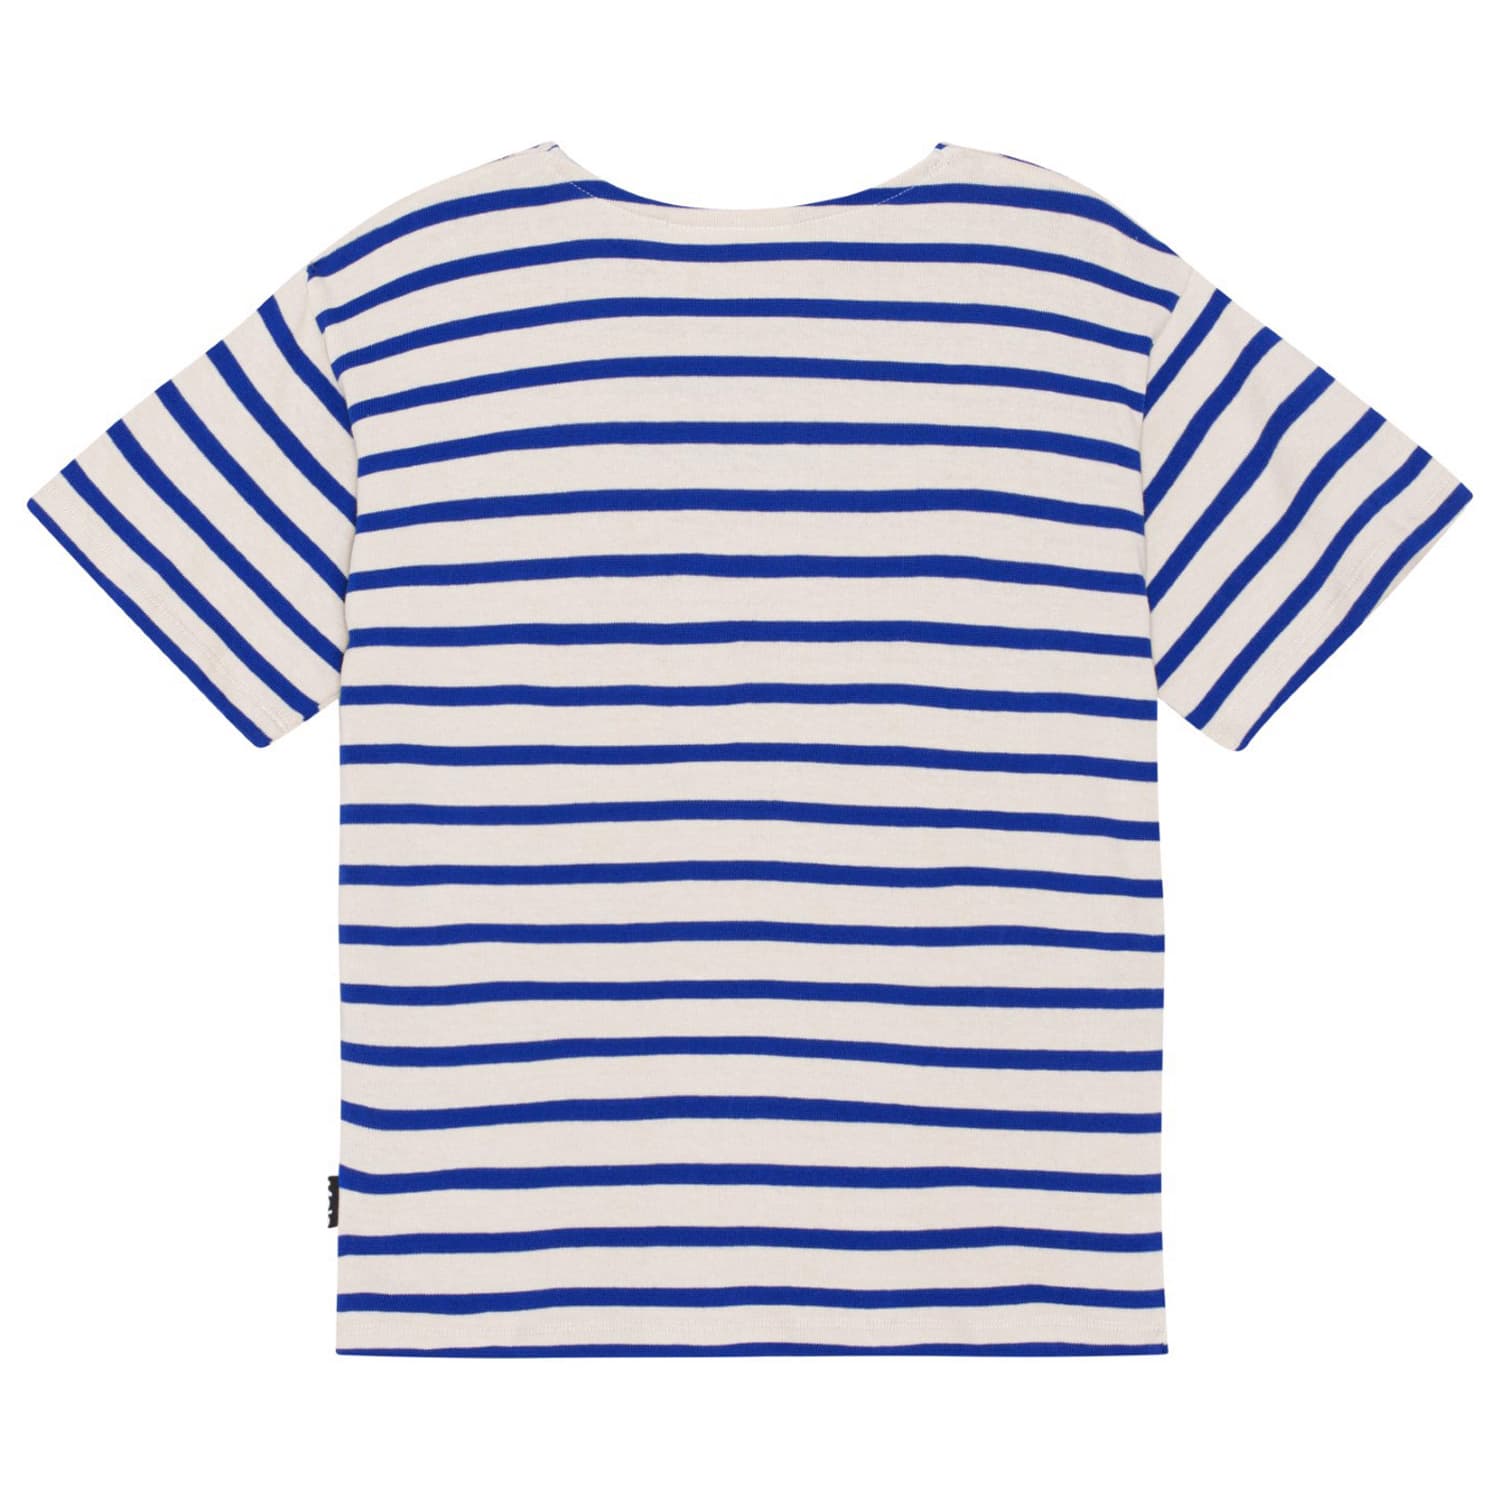 Rilee T-shirt (Reef Stripe)